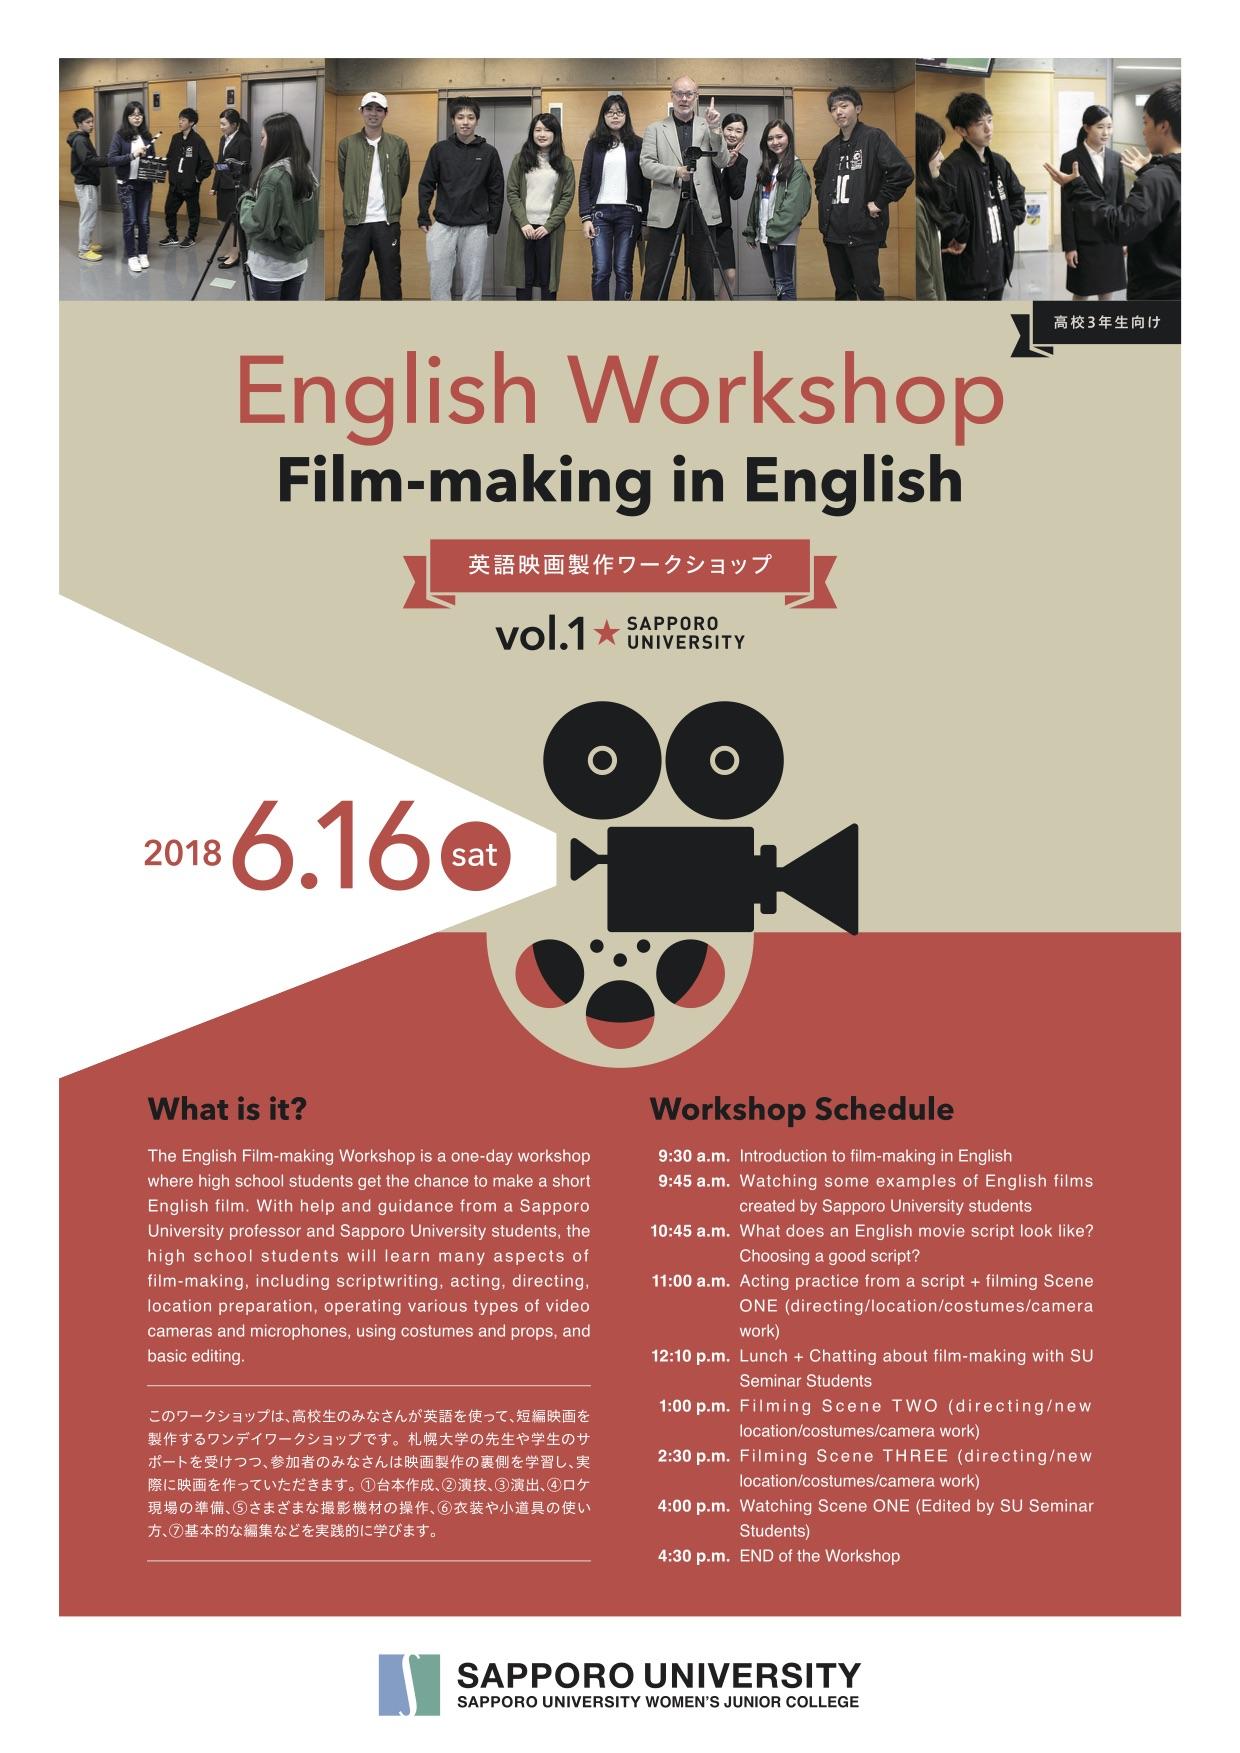 「高校生English Workshop」を開催 -- 英語で短編映画製作に挑戦 -- 札幌大学